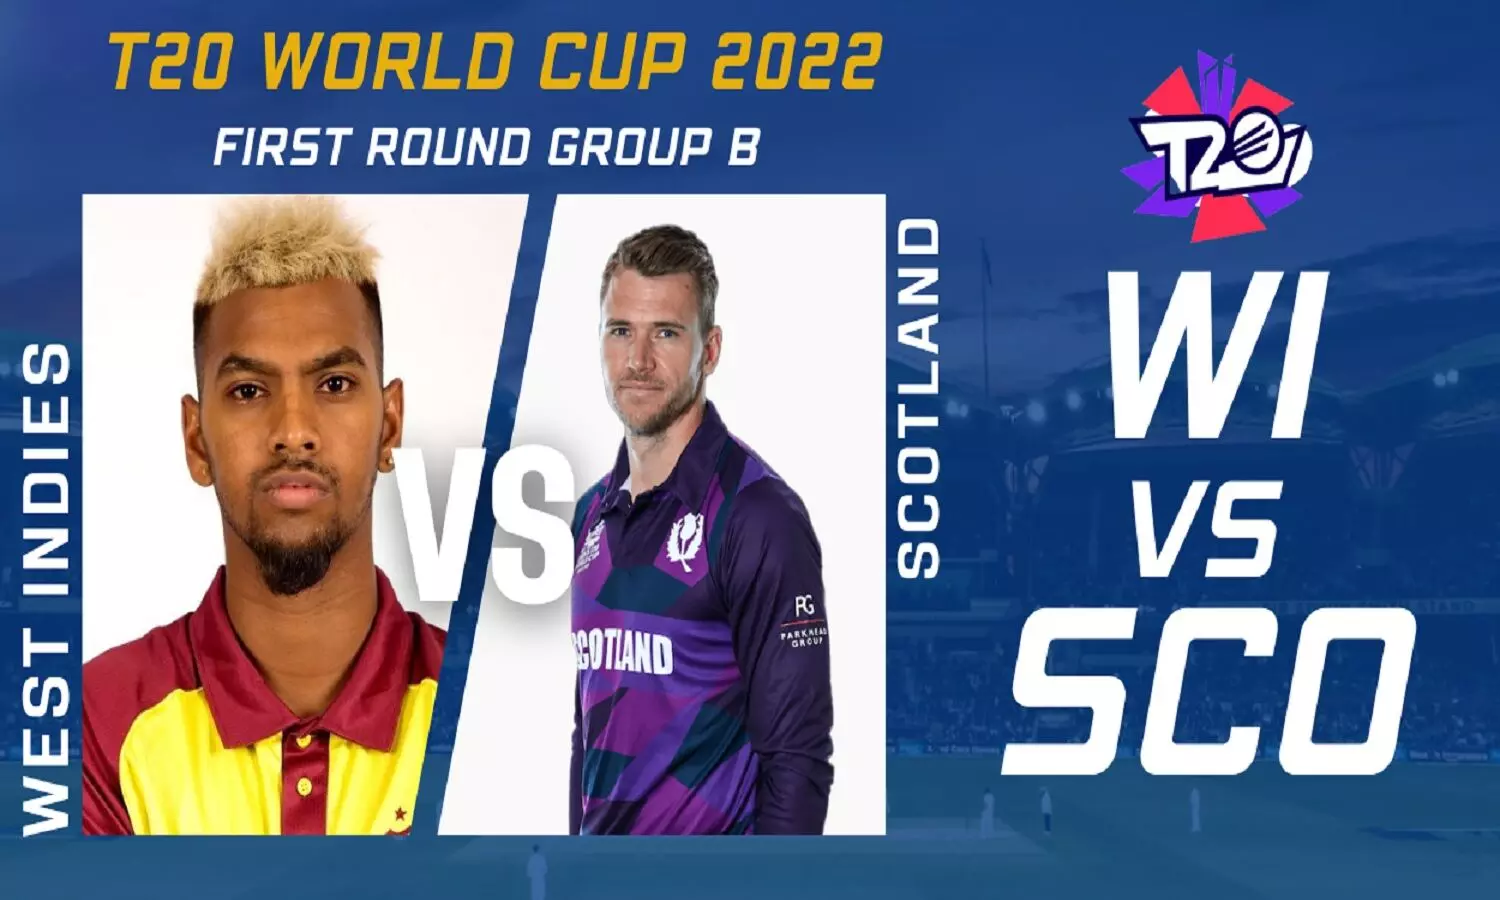 West Indies Vs Scotland Playing 11: T20 WC 2022 के दूसरे दिन का पहला मैच वेस्ट इंडीज Vs स्कॉटलैंड, जानें प्लेइंग 11